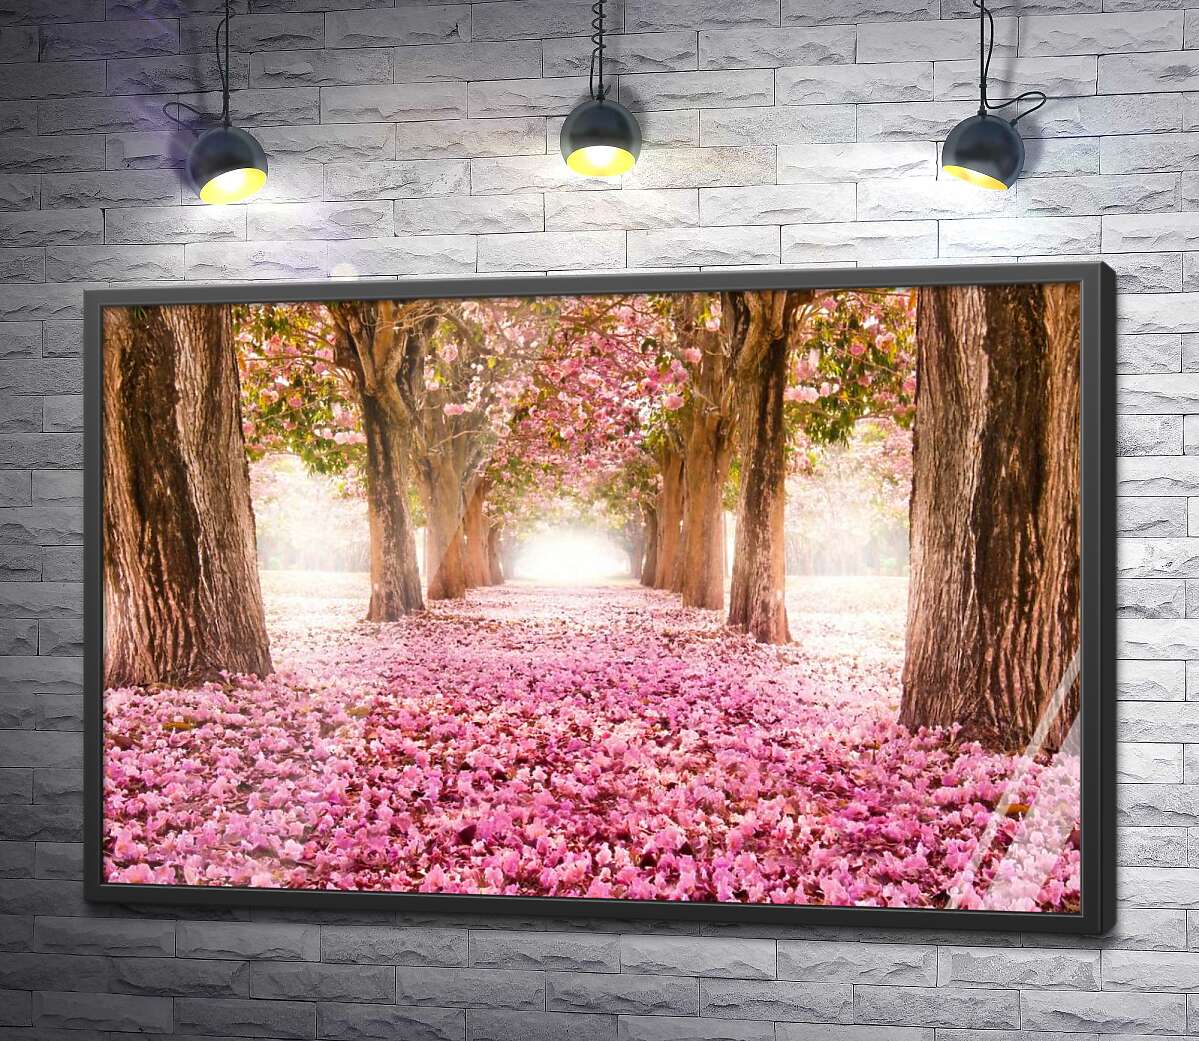 постер Розовая дорожка среди цветущей аллеи сакур